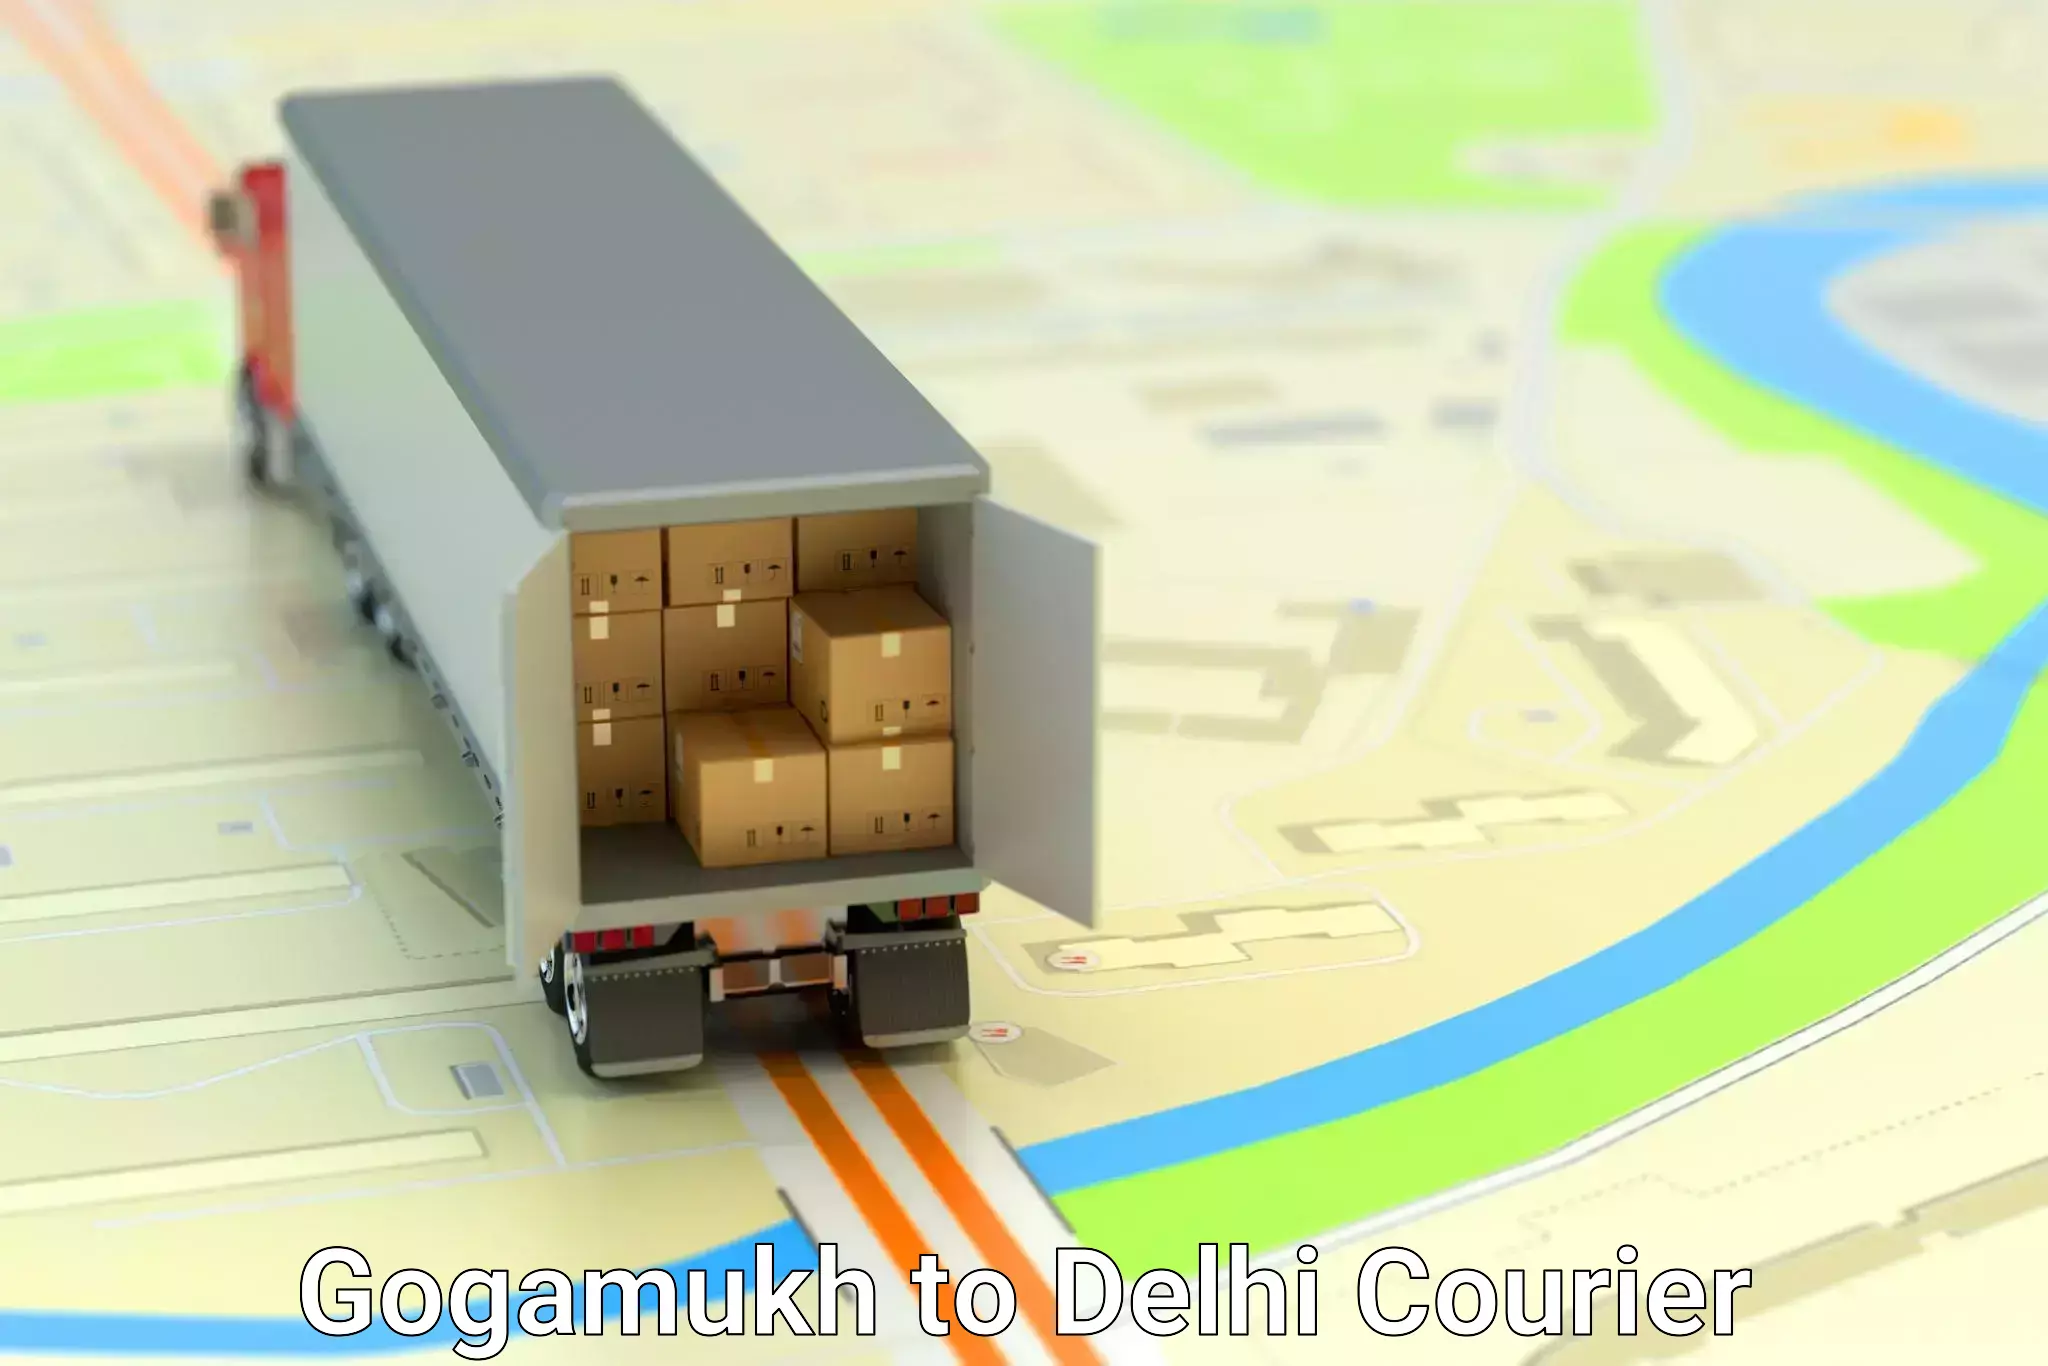 Advanced parcel tracking Gogamukh to Delhi